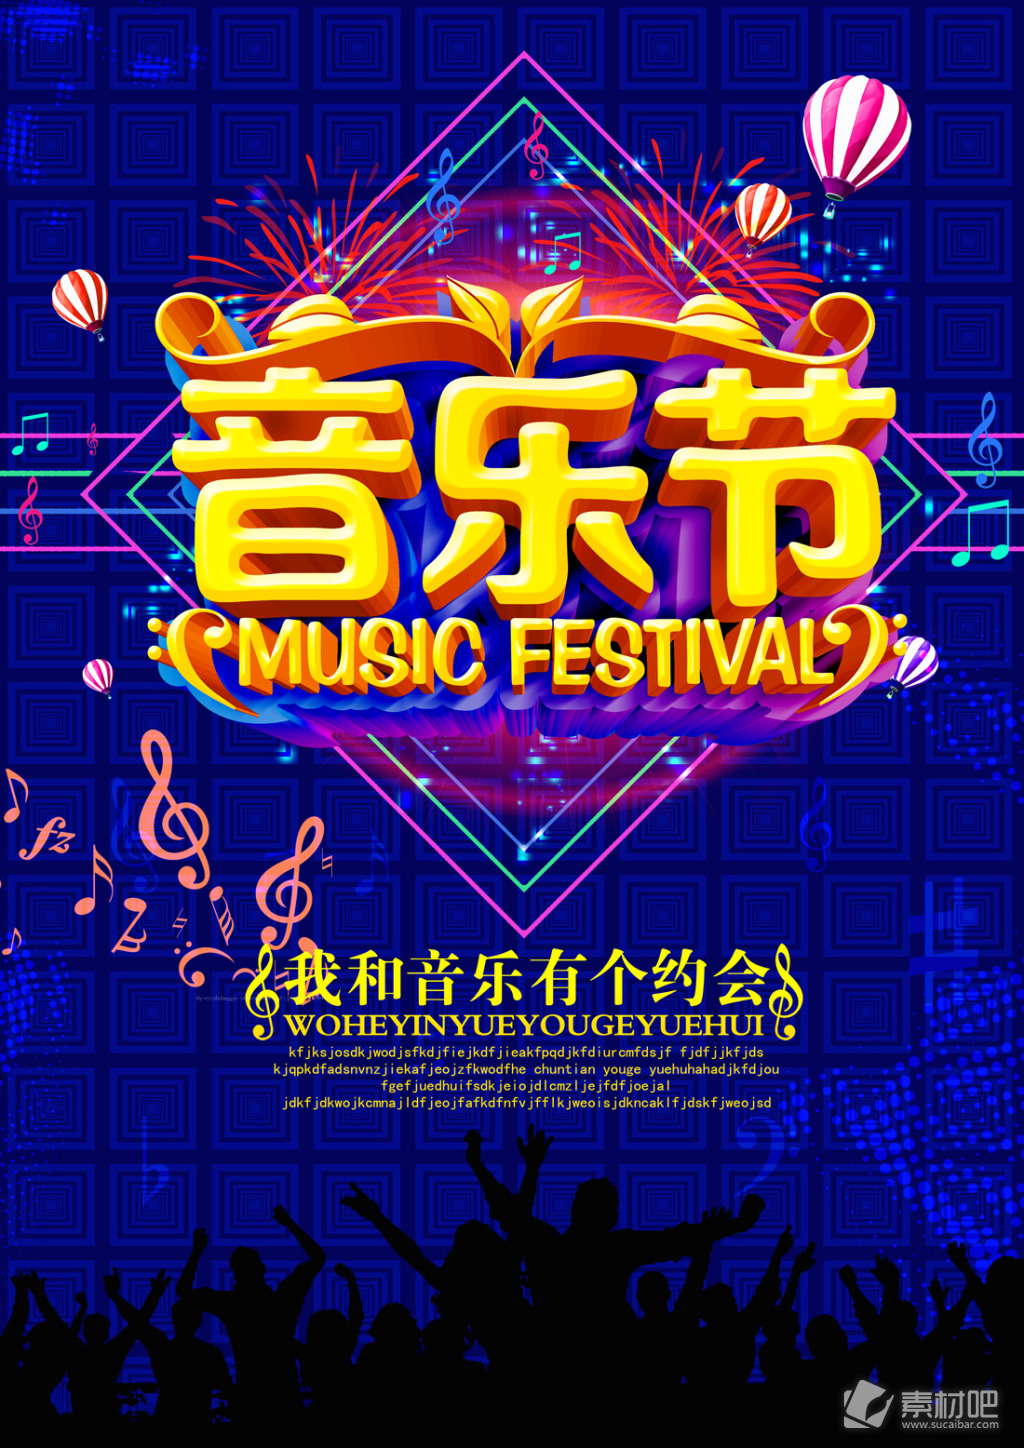 音乐节宣传海报设计PSD